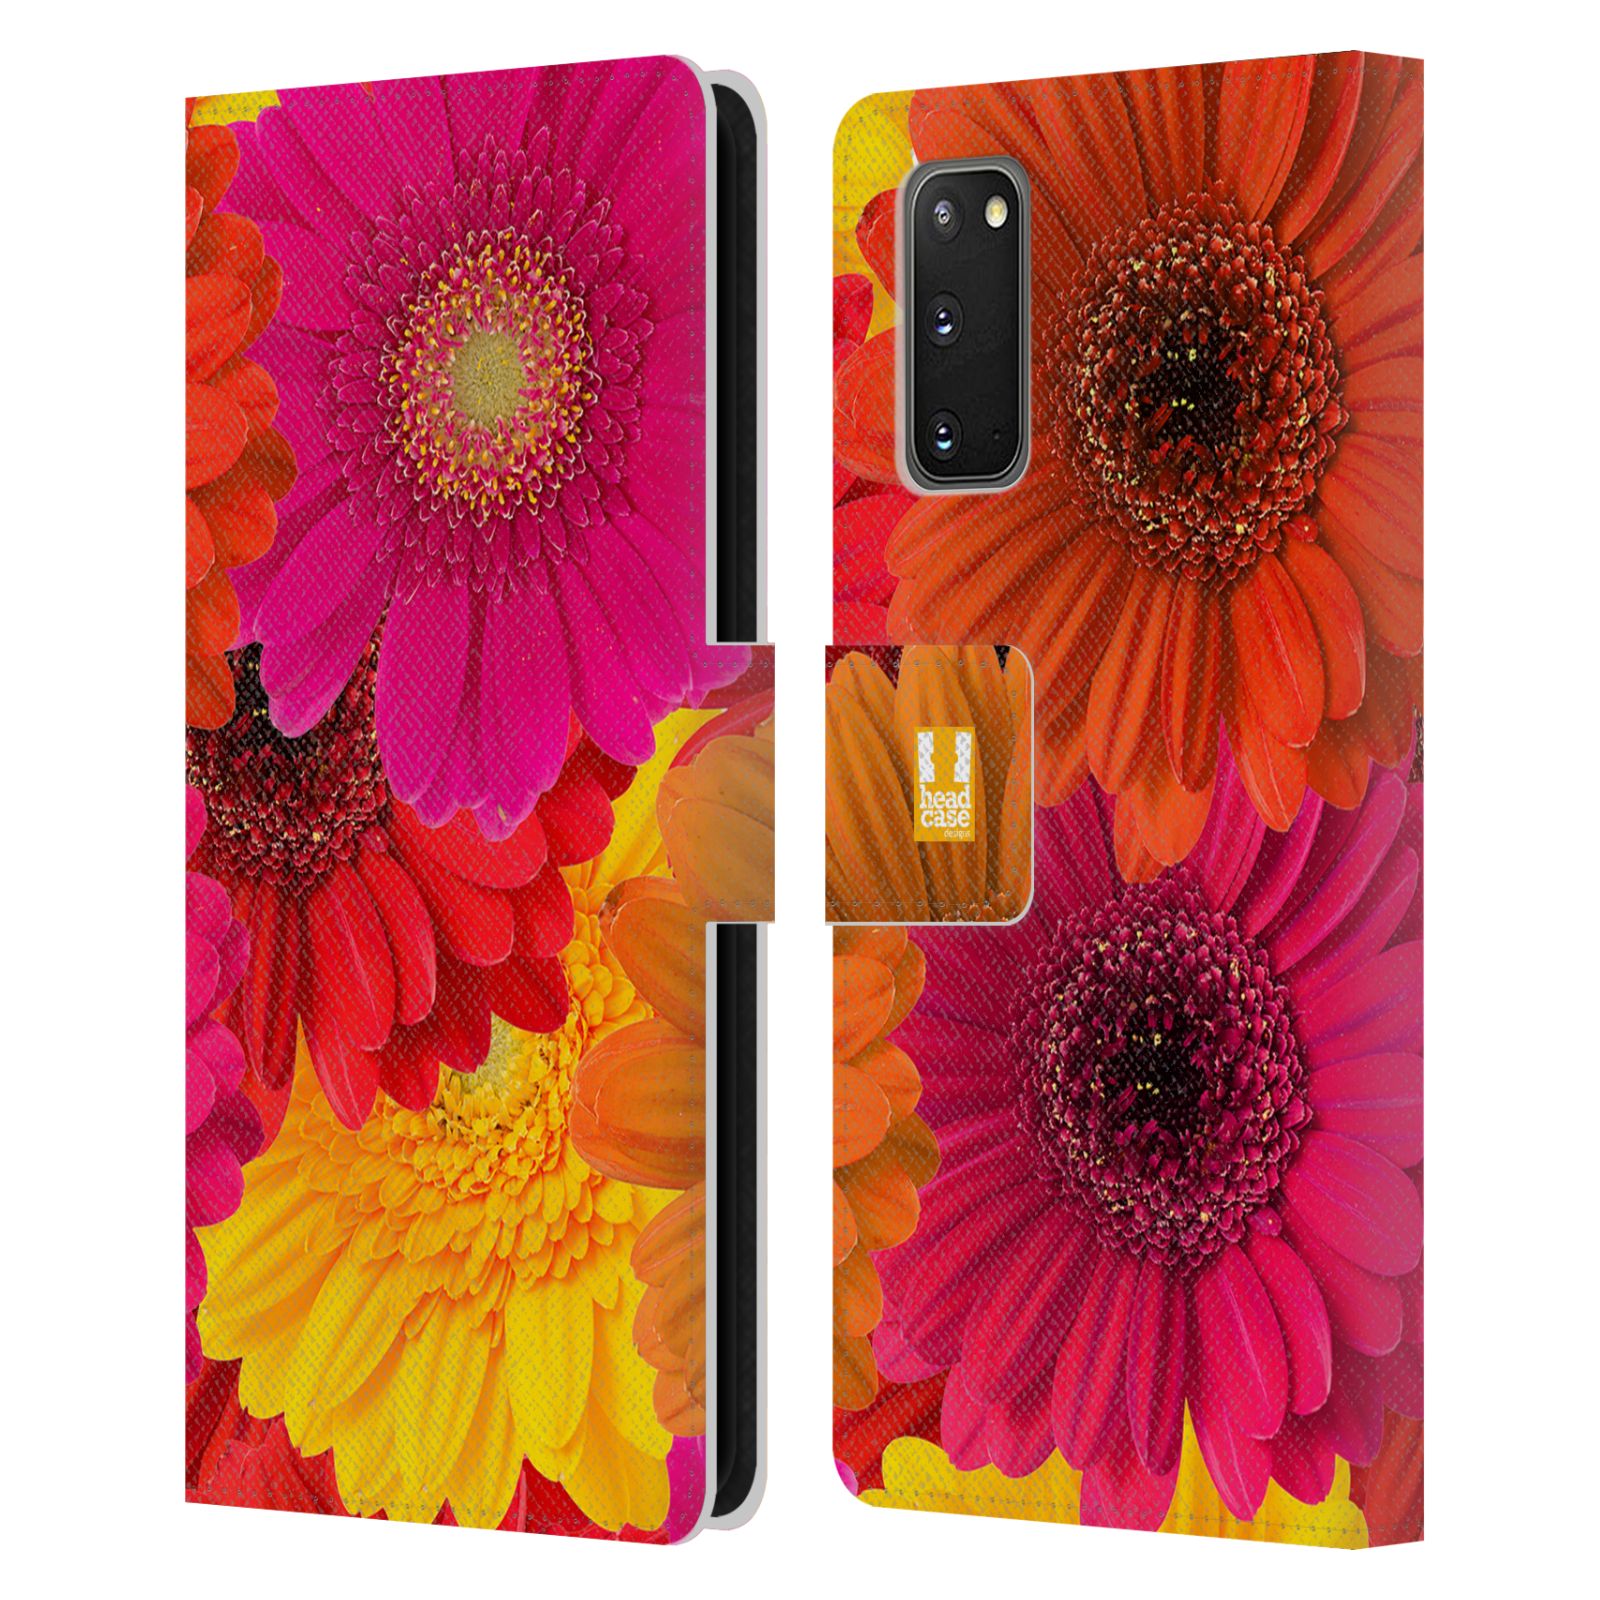 Pouzdro na mobil Samsung Galaxy S20 květy foto fialová, oranžová GERBERA